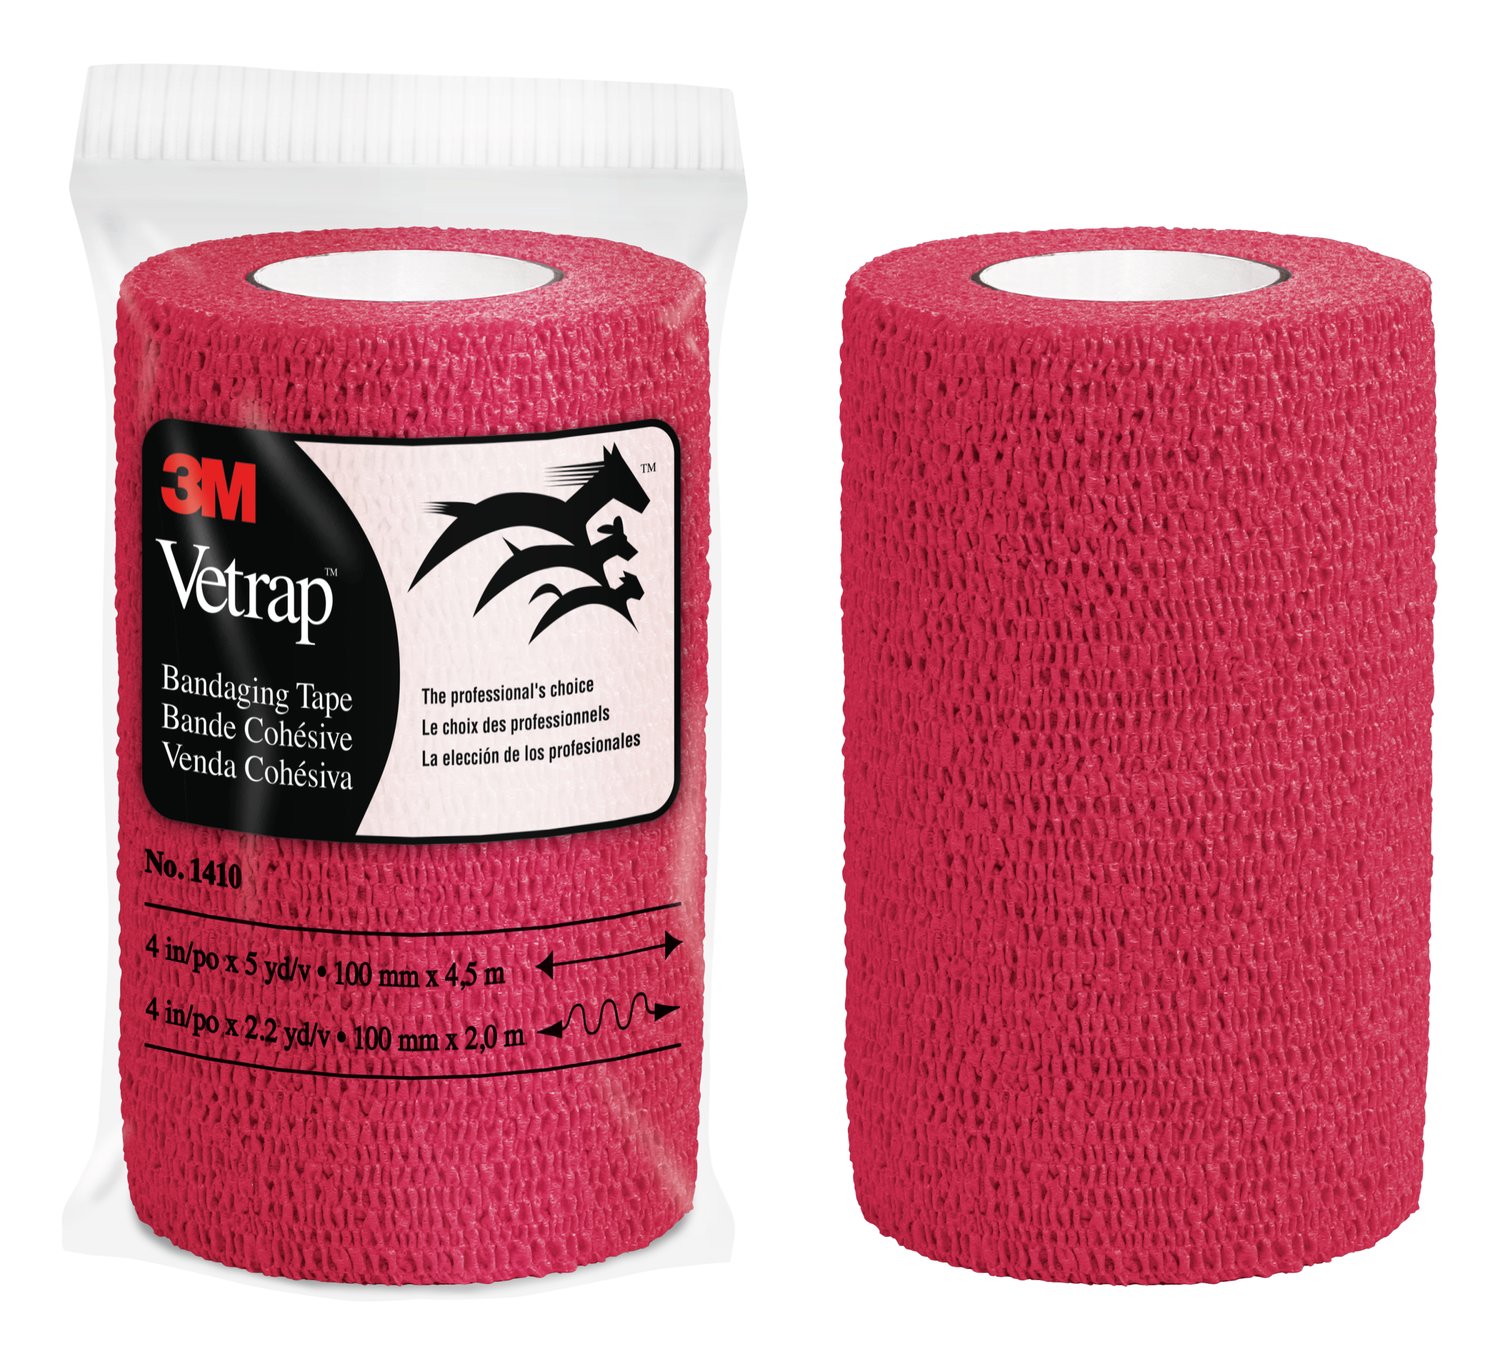 7000145045 - 3M Vetrap Bandaging Tape Bulk Pack, 1410R Bulk Red